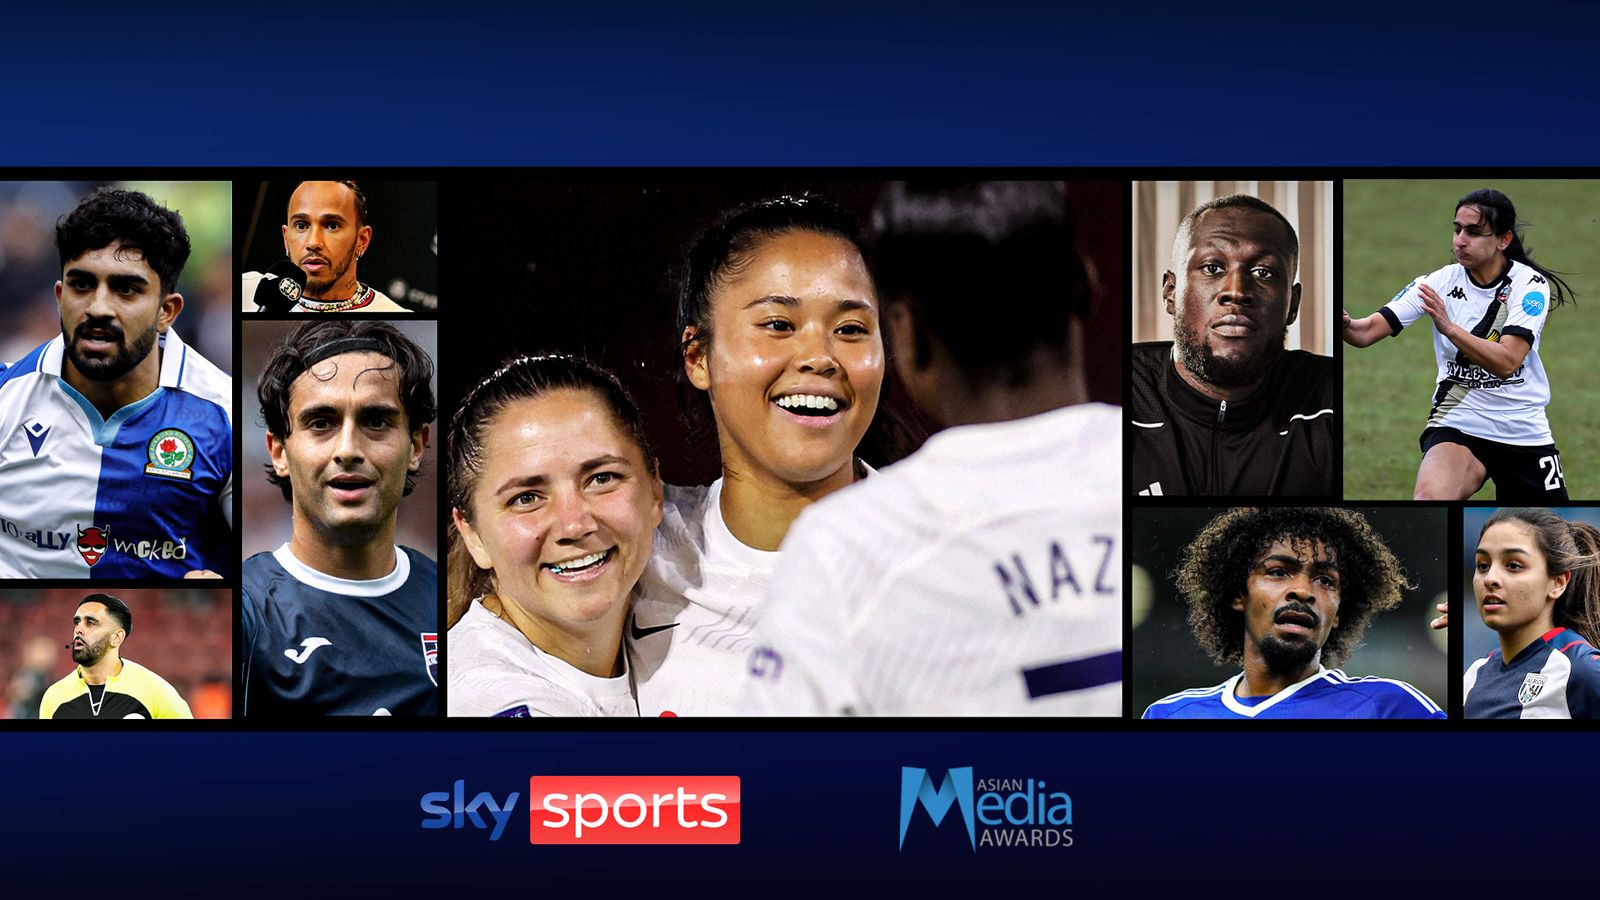 Sky Sports remporte le prix de la diversité dans les médias aux Asian Media Awards 2023 avec son engagement envers les Sud-Asiatiques britanniques dans le football mis en avant |  Actualités footballistiques